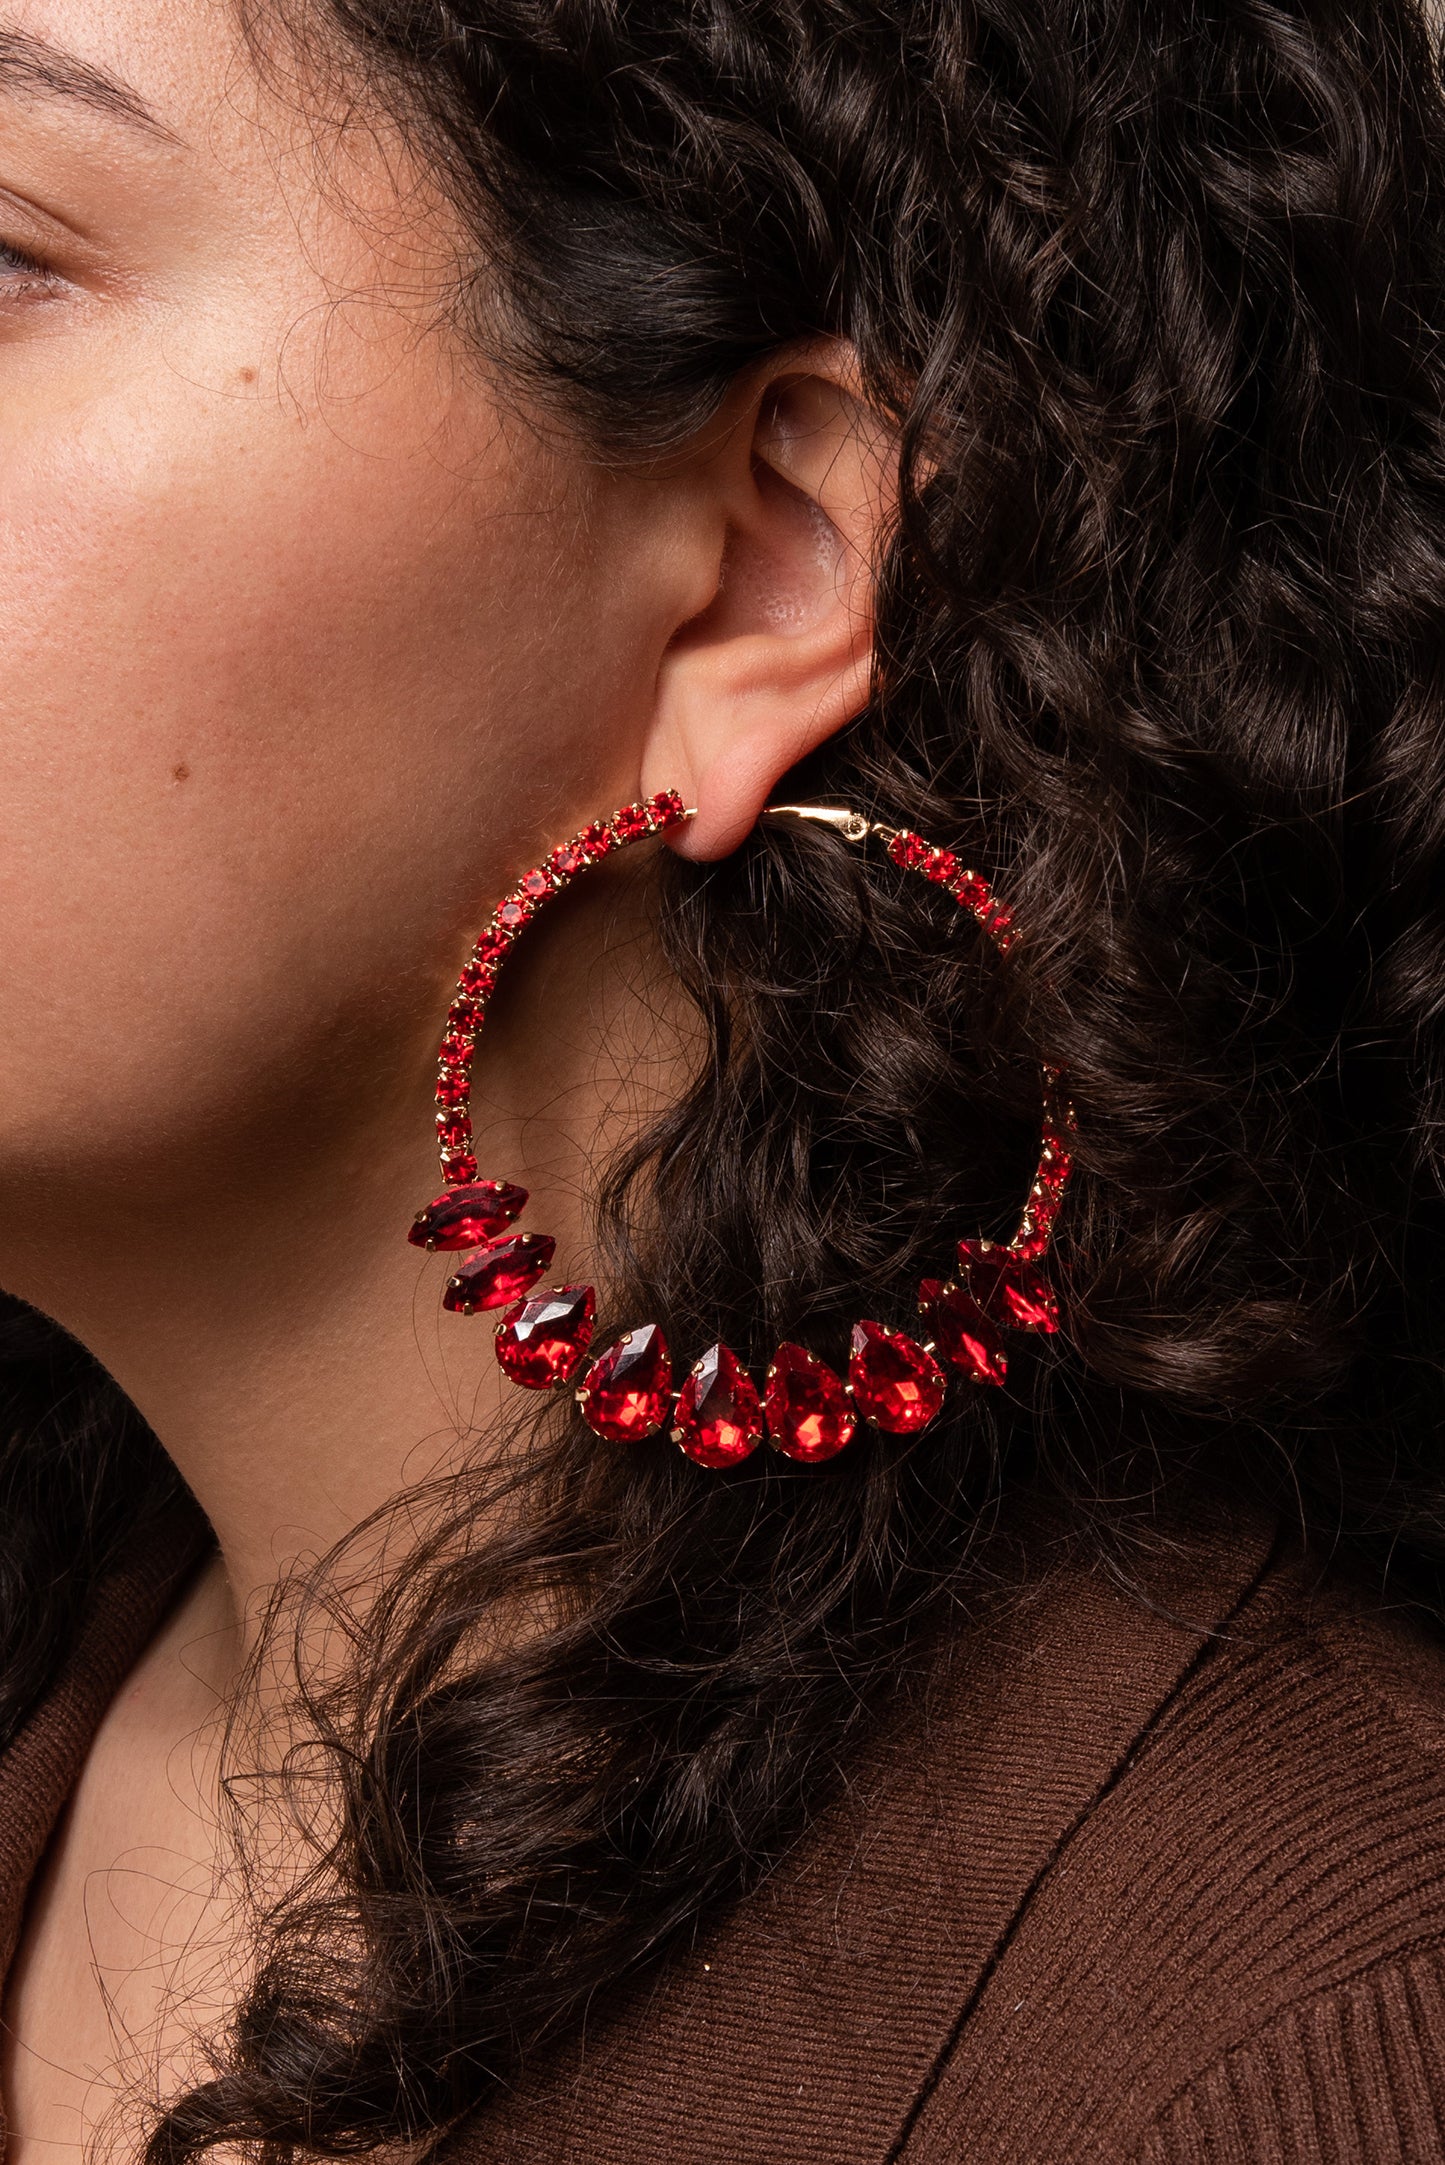 Rhinestone Embellished Hoop Earrings